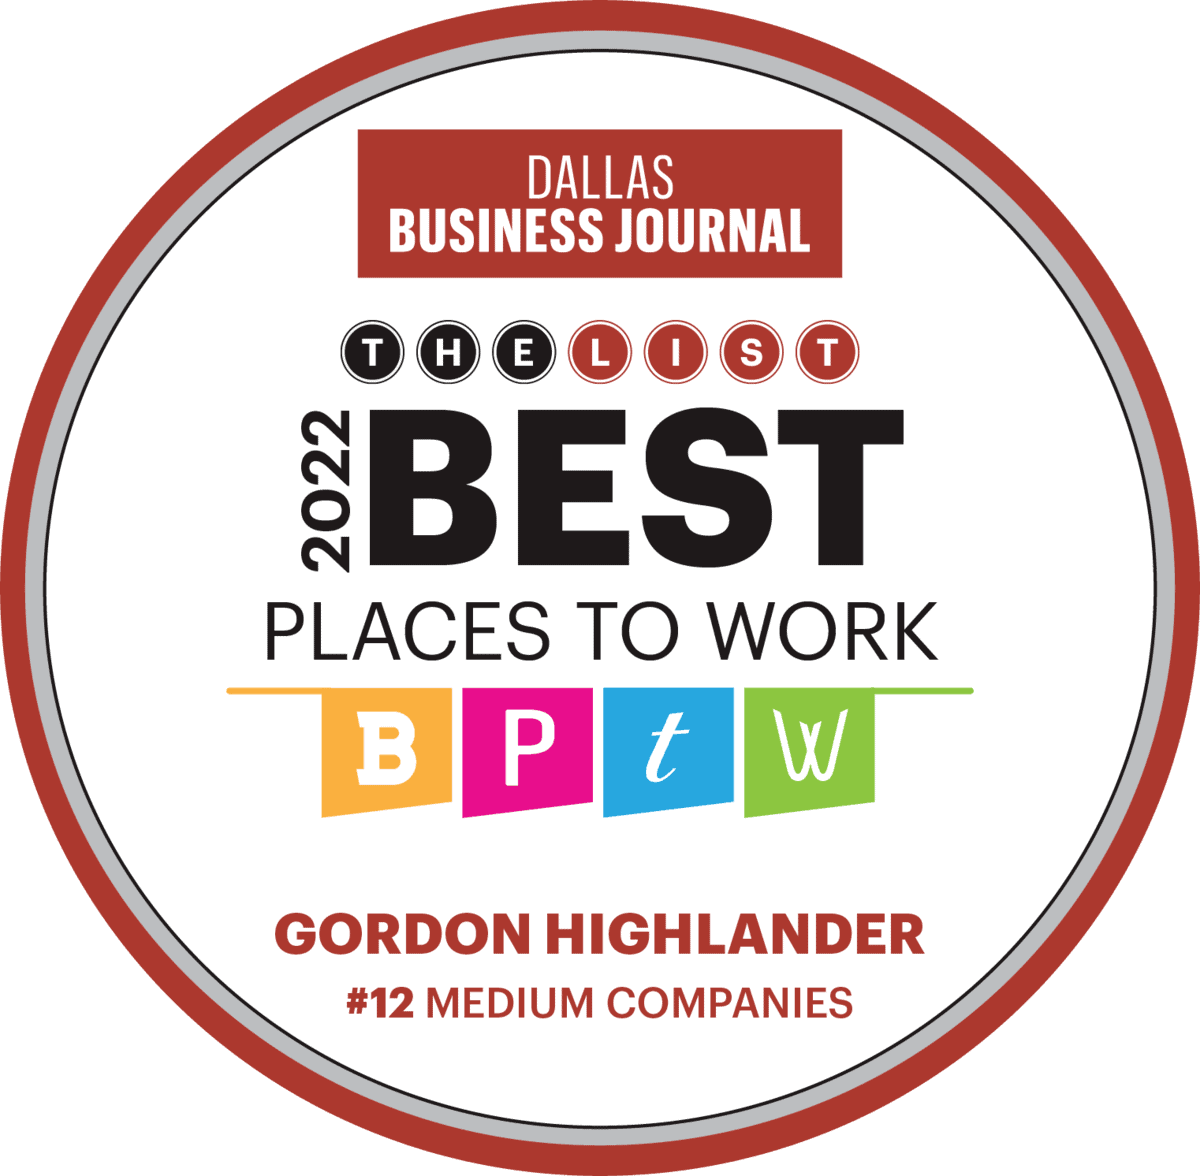 Gordon Highlander wins Best Places to Work in DBJ 2022